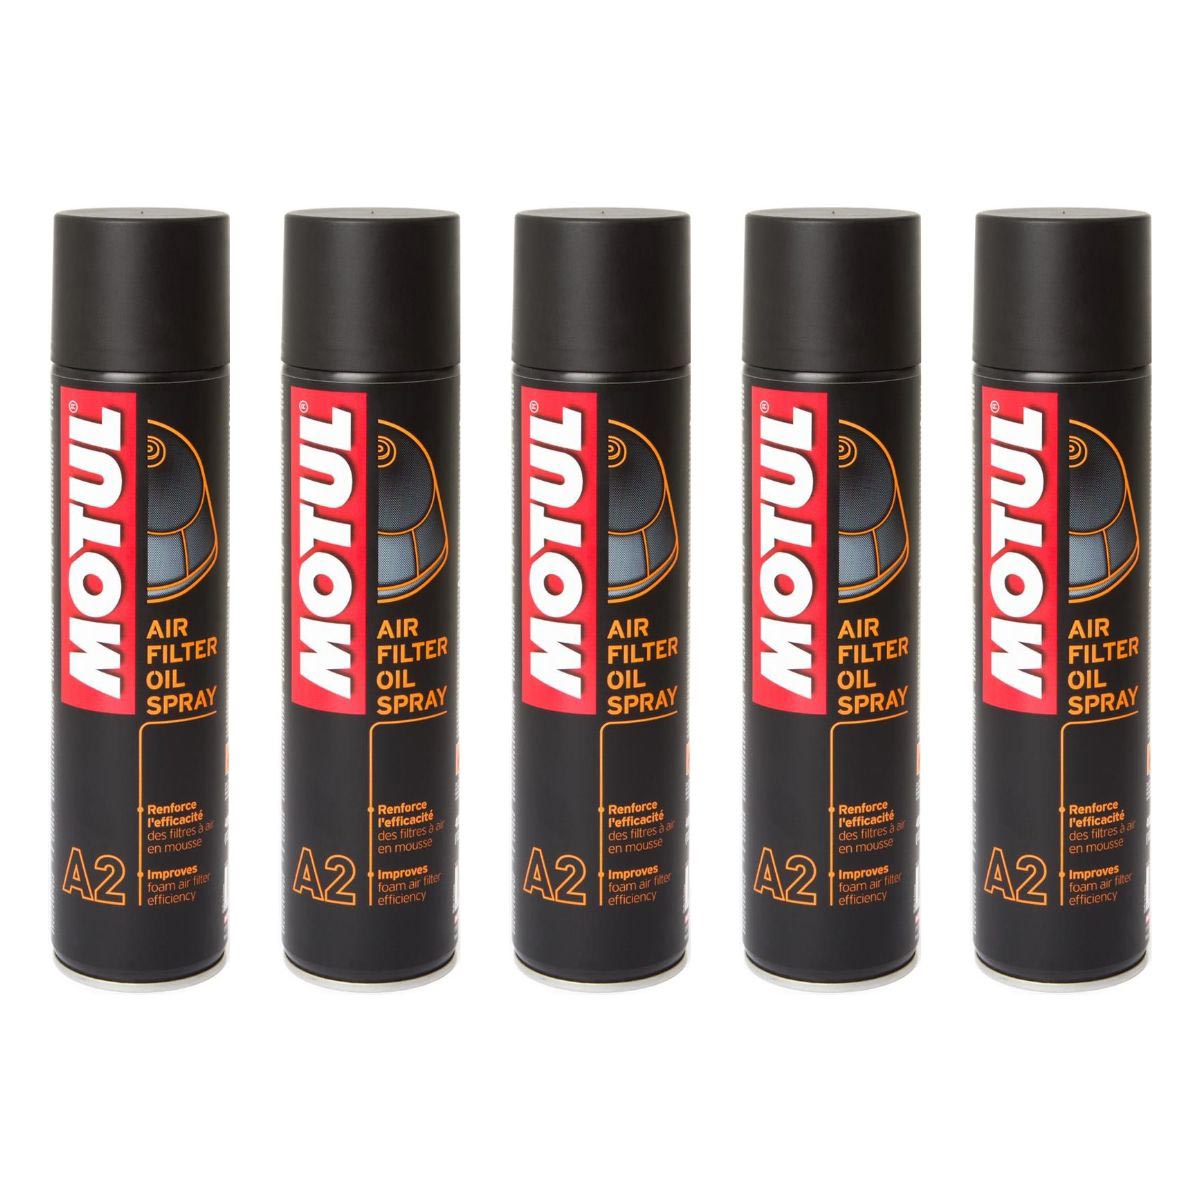 Motul Spray Huile Filtre à Air A2 Set: 5 pièces, 400 ml chacun